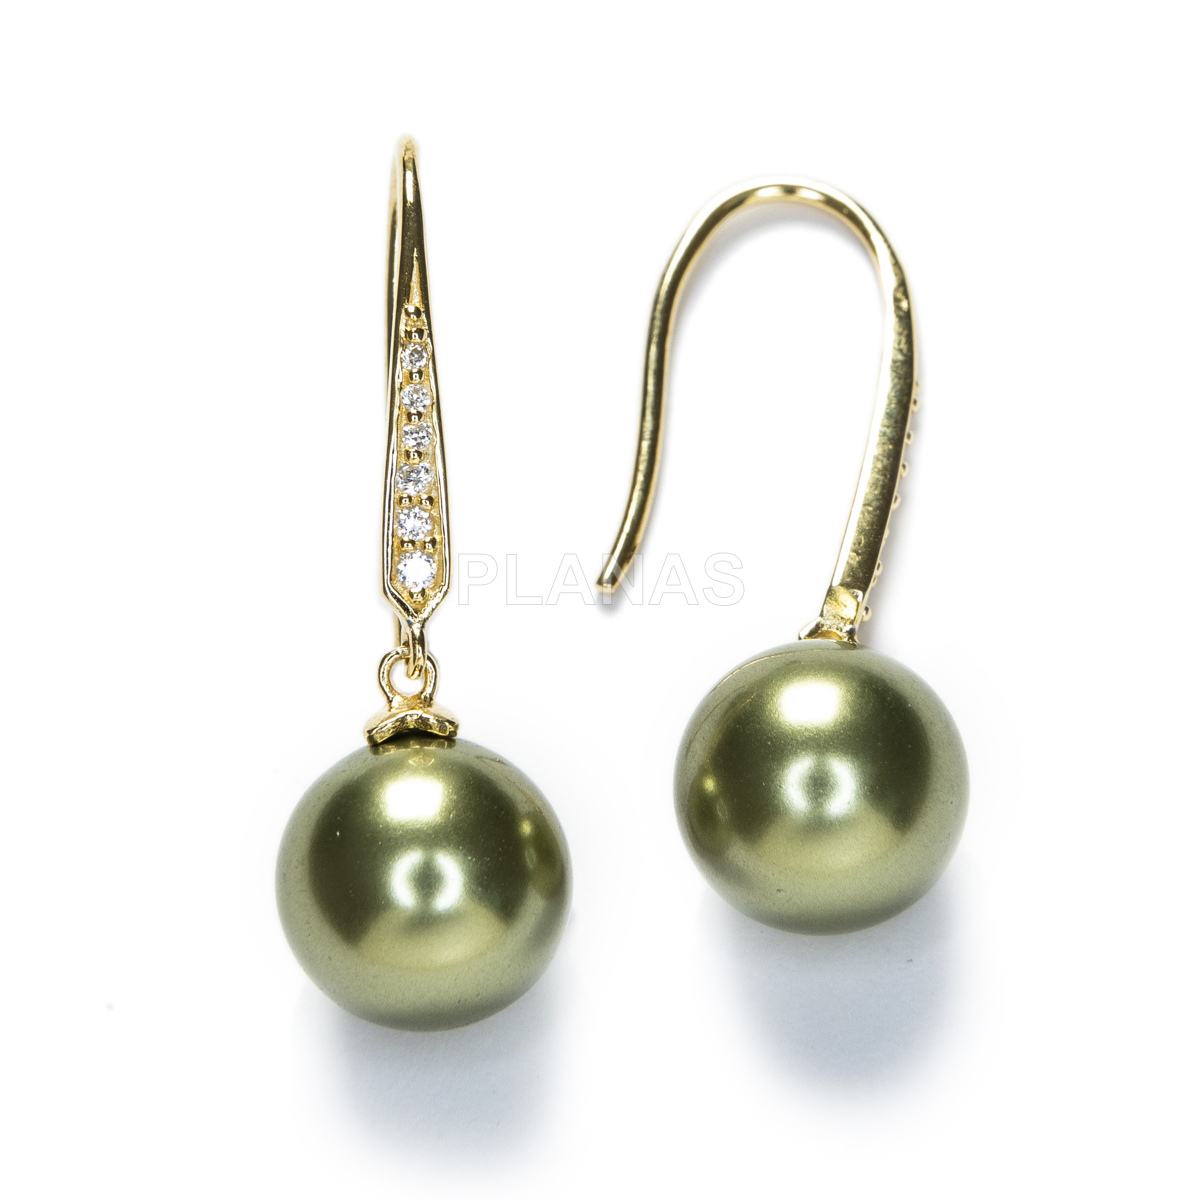 Pendientes en plata de ley y Baño Oro con perla Austríaca de primera calidad ,10mm. 